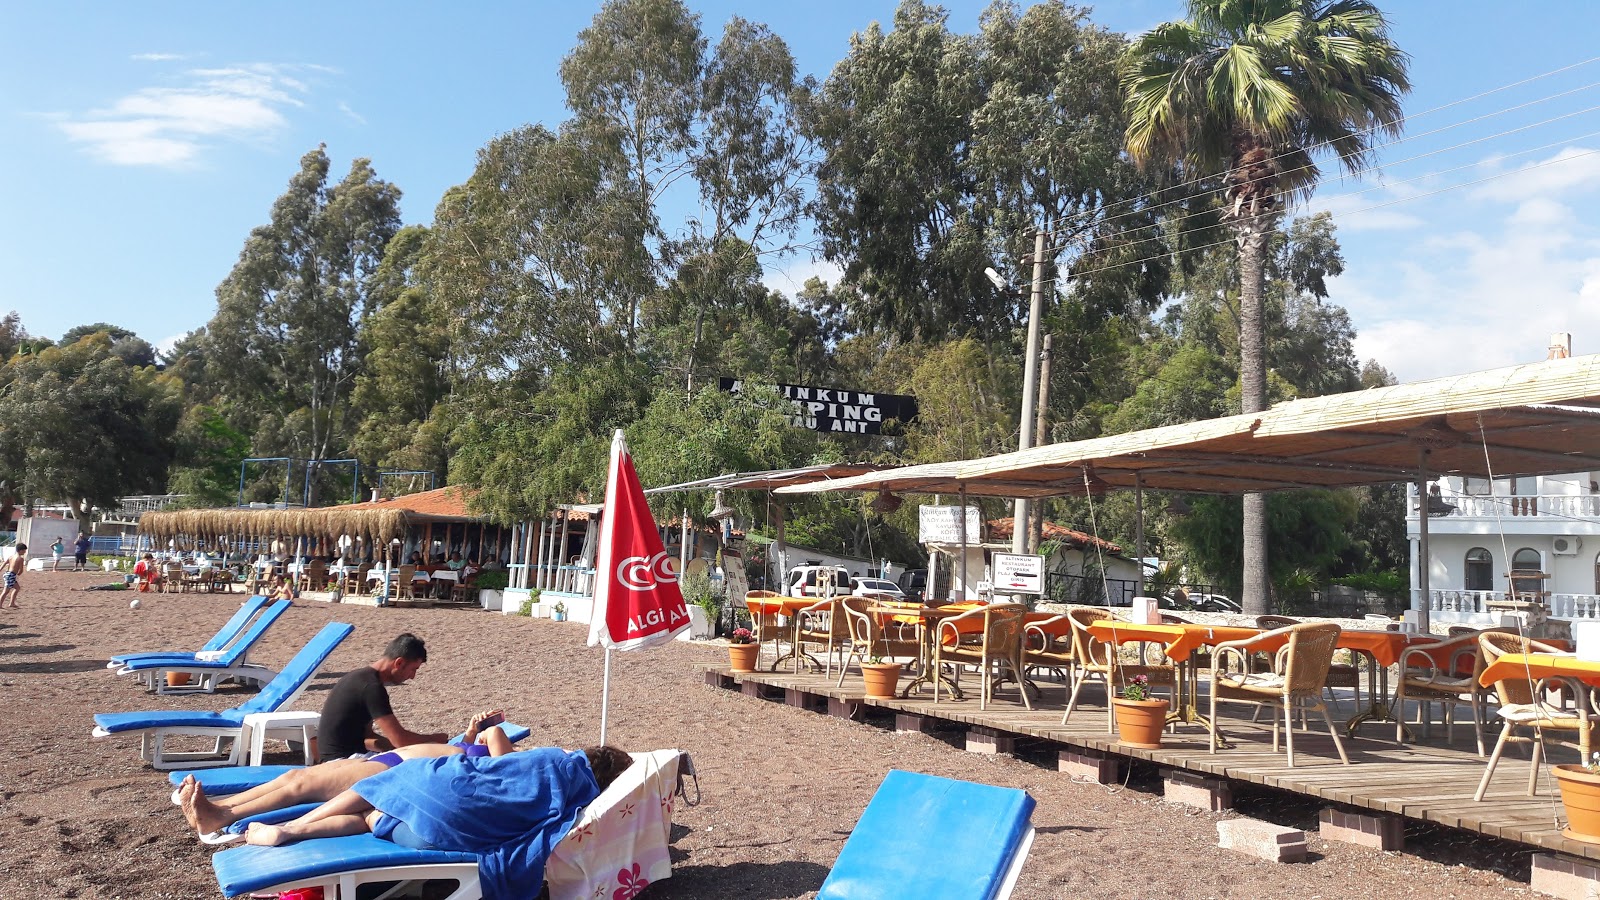 Fotografie cu Erine beach Club - locul popular printre cunoscătorii de relaxare